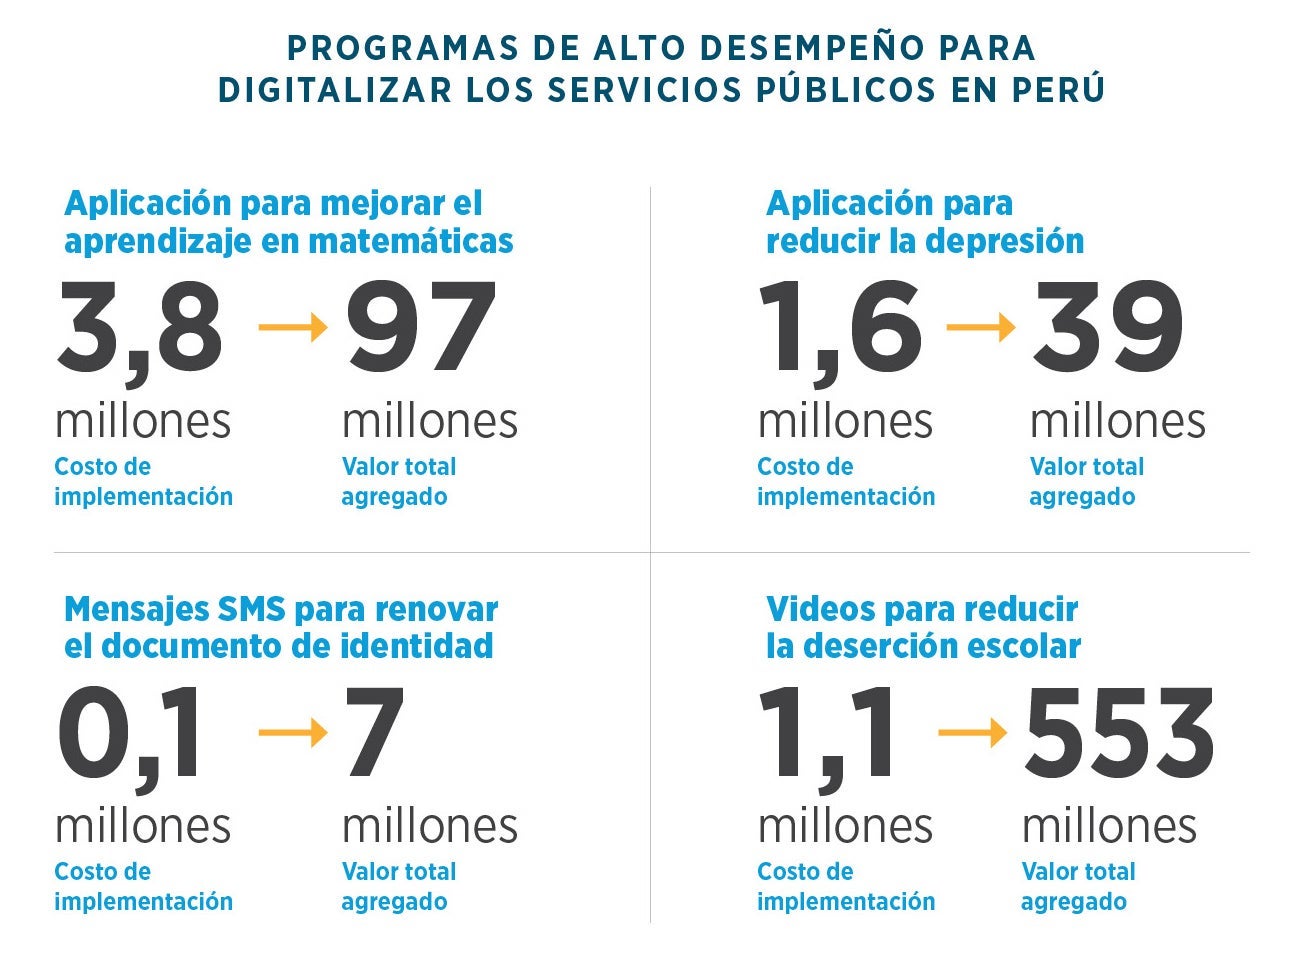 Programas de alto desempeño para digitalizar servicios públicos en Perú